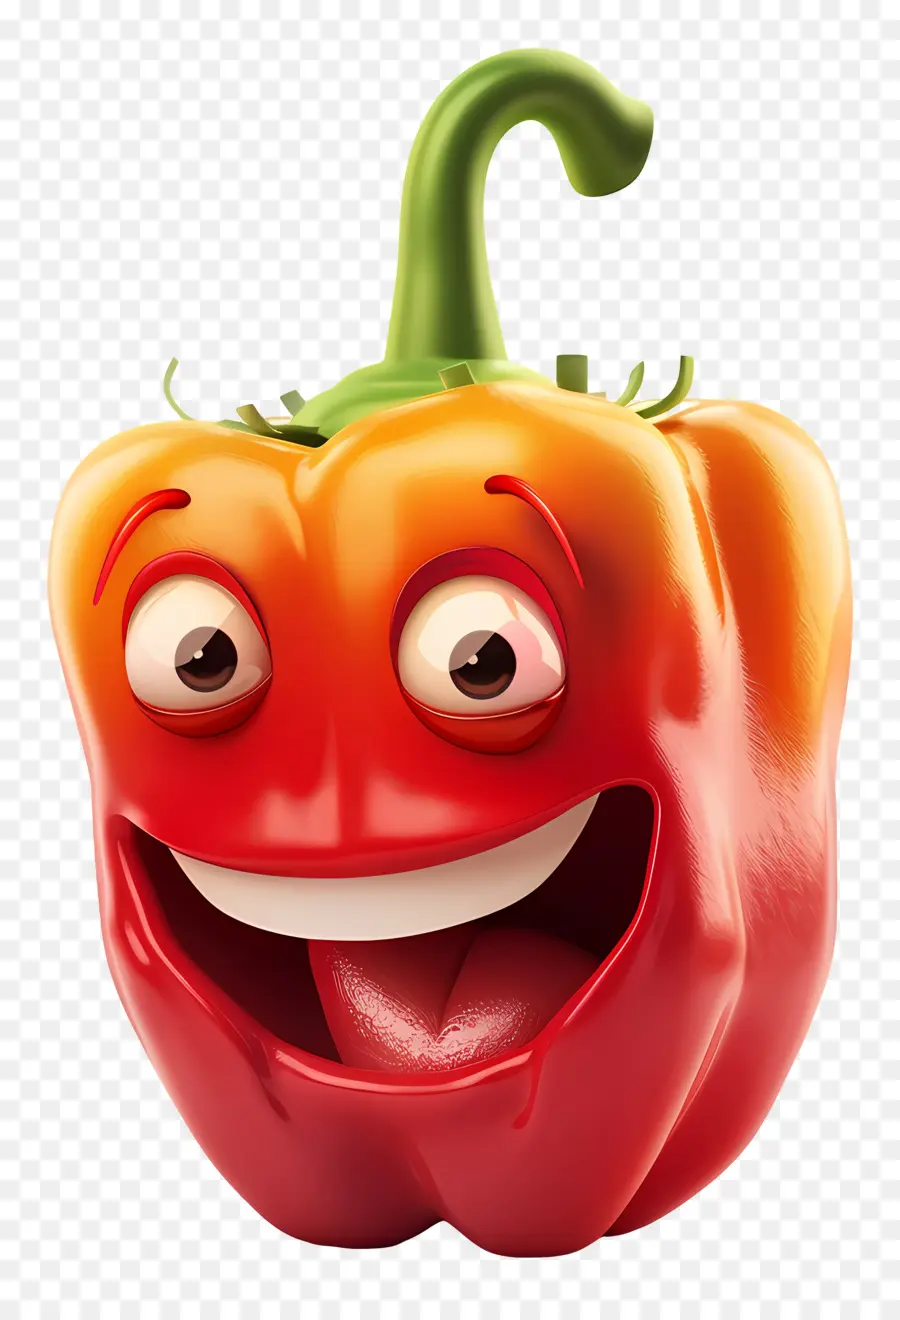 Phim hoạt hình 3d Chuông đỏ Chuông Red Pepper Happy Smiling - Happy Cartoon Red Bell ớt trong giày